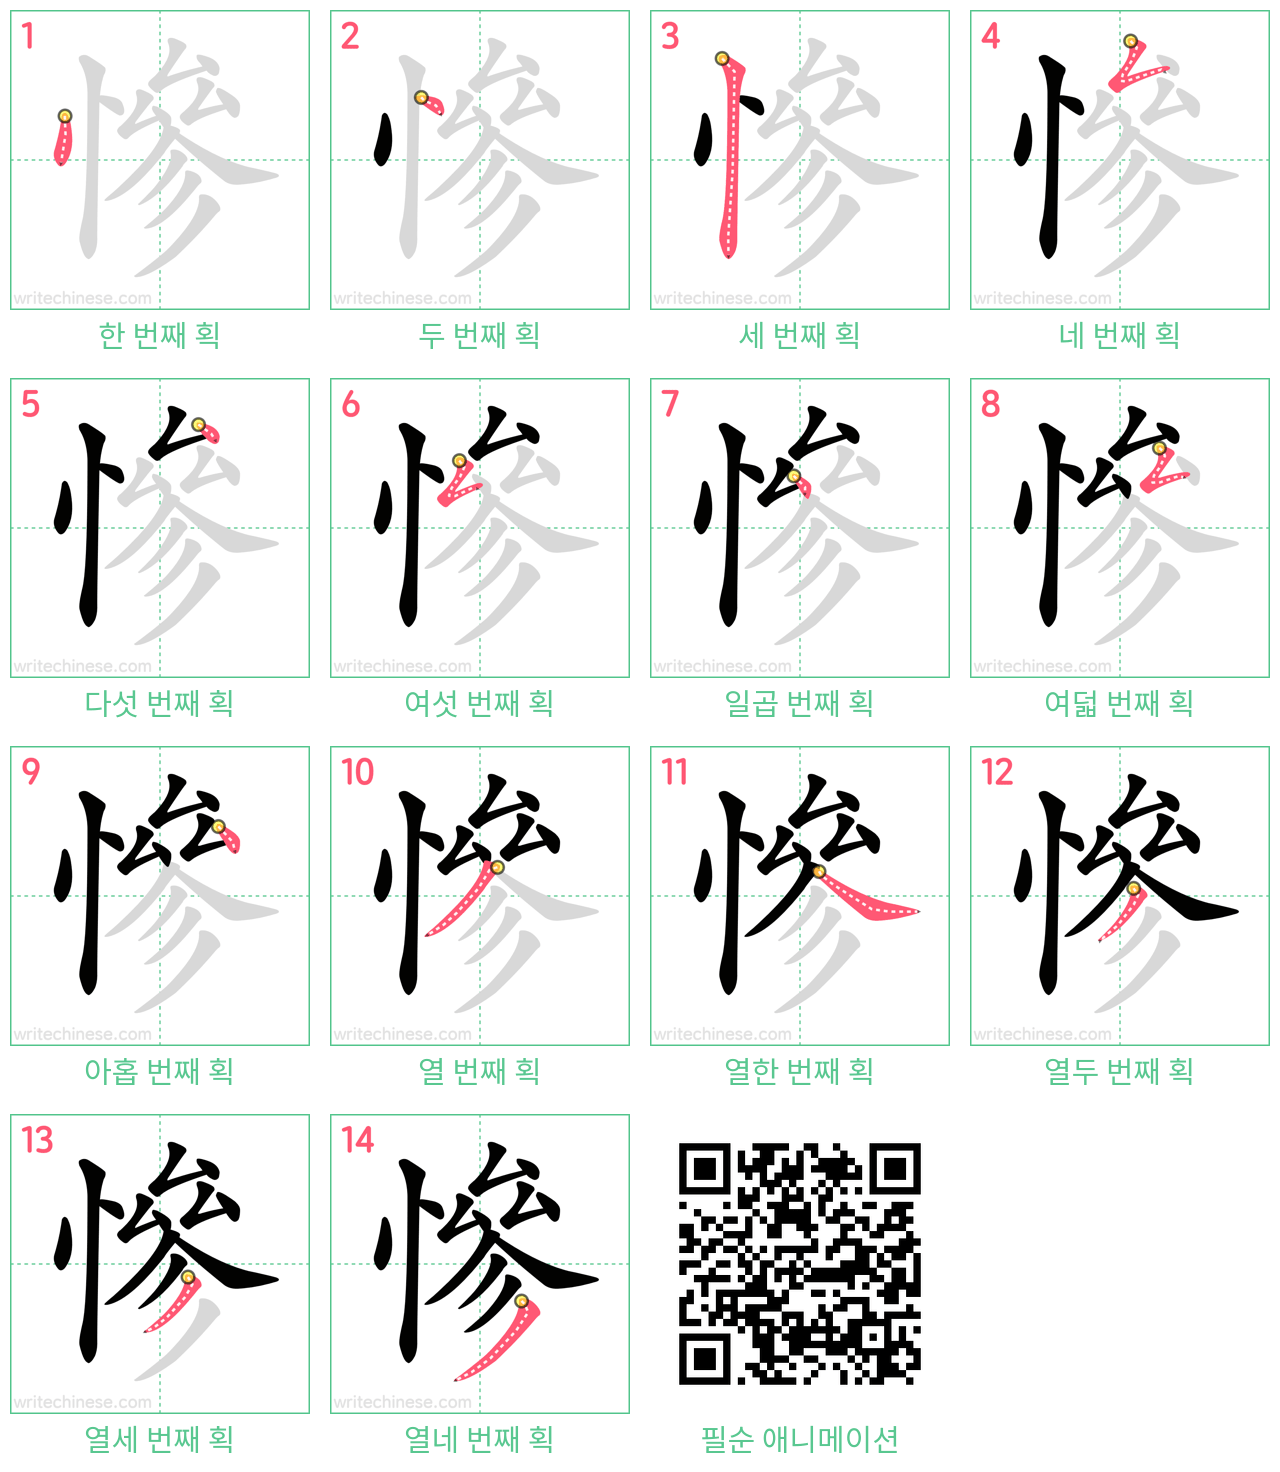 慘 step-by-step stroke order diagrams